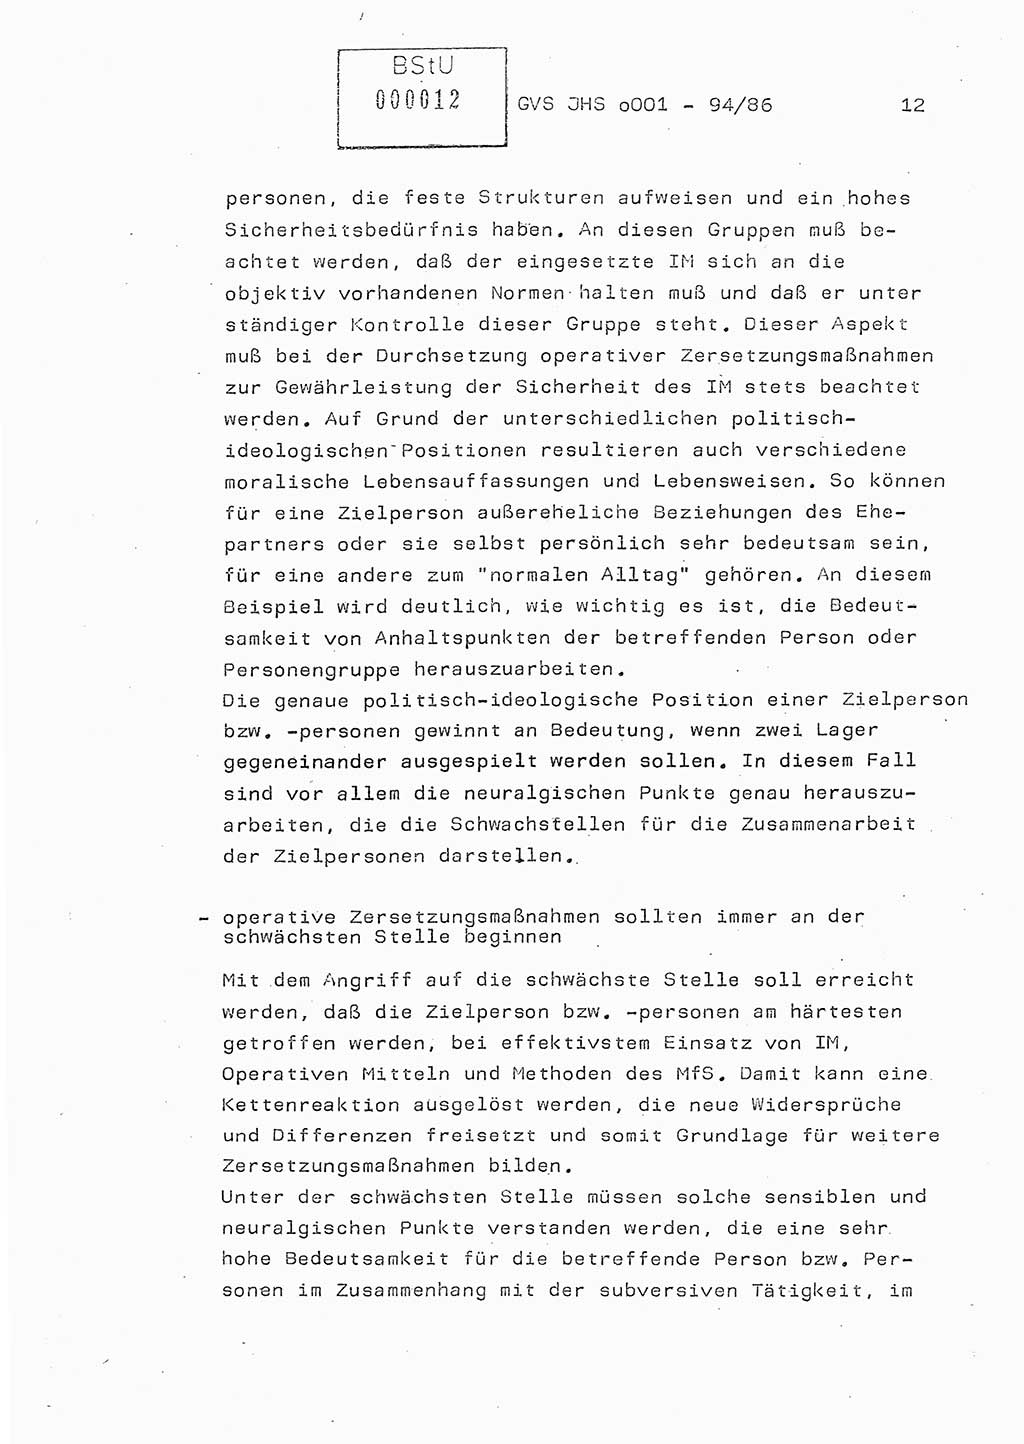 Diplomarbeit Oberleutnant Volkmar Pechmann (HA ⅩⅩ/5), Ministerium für Staatssicherheit (MfS) [Deutsche Demokratische Republik (DDR)], Juristische Hochschule (JHS), Geheime Verschlußsache (GVS) o001-94/86, Potsdam 1986, Blatt 12 (Dipl.-Arb. MfS DDR JHS GVS o001-94/86 1986, Bl. 12)